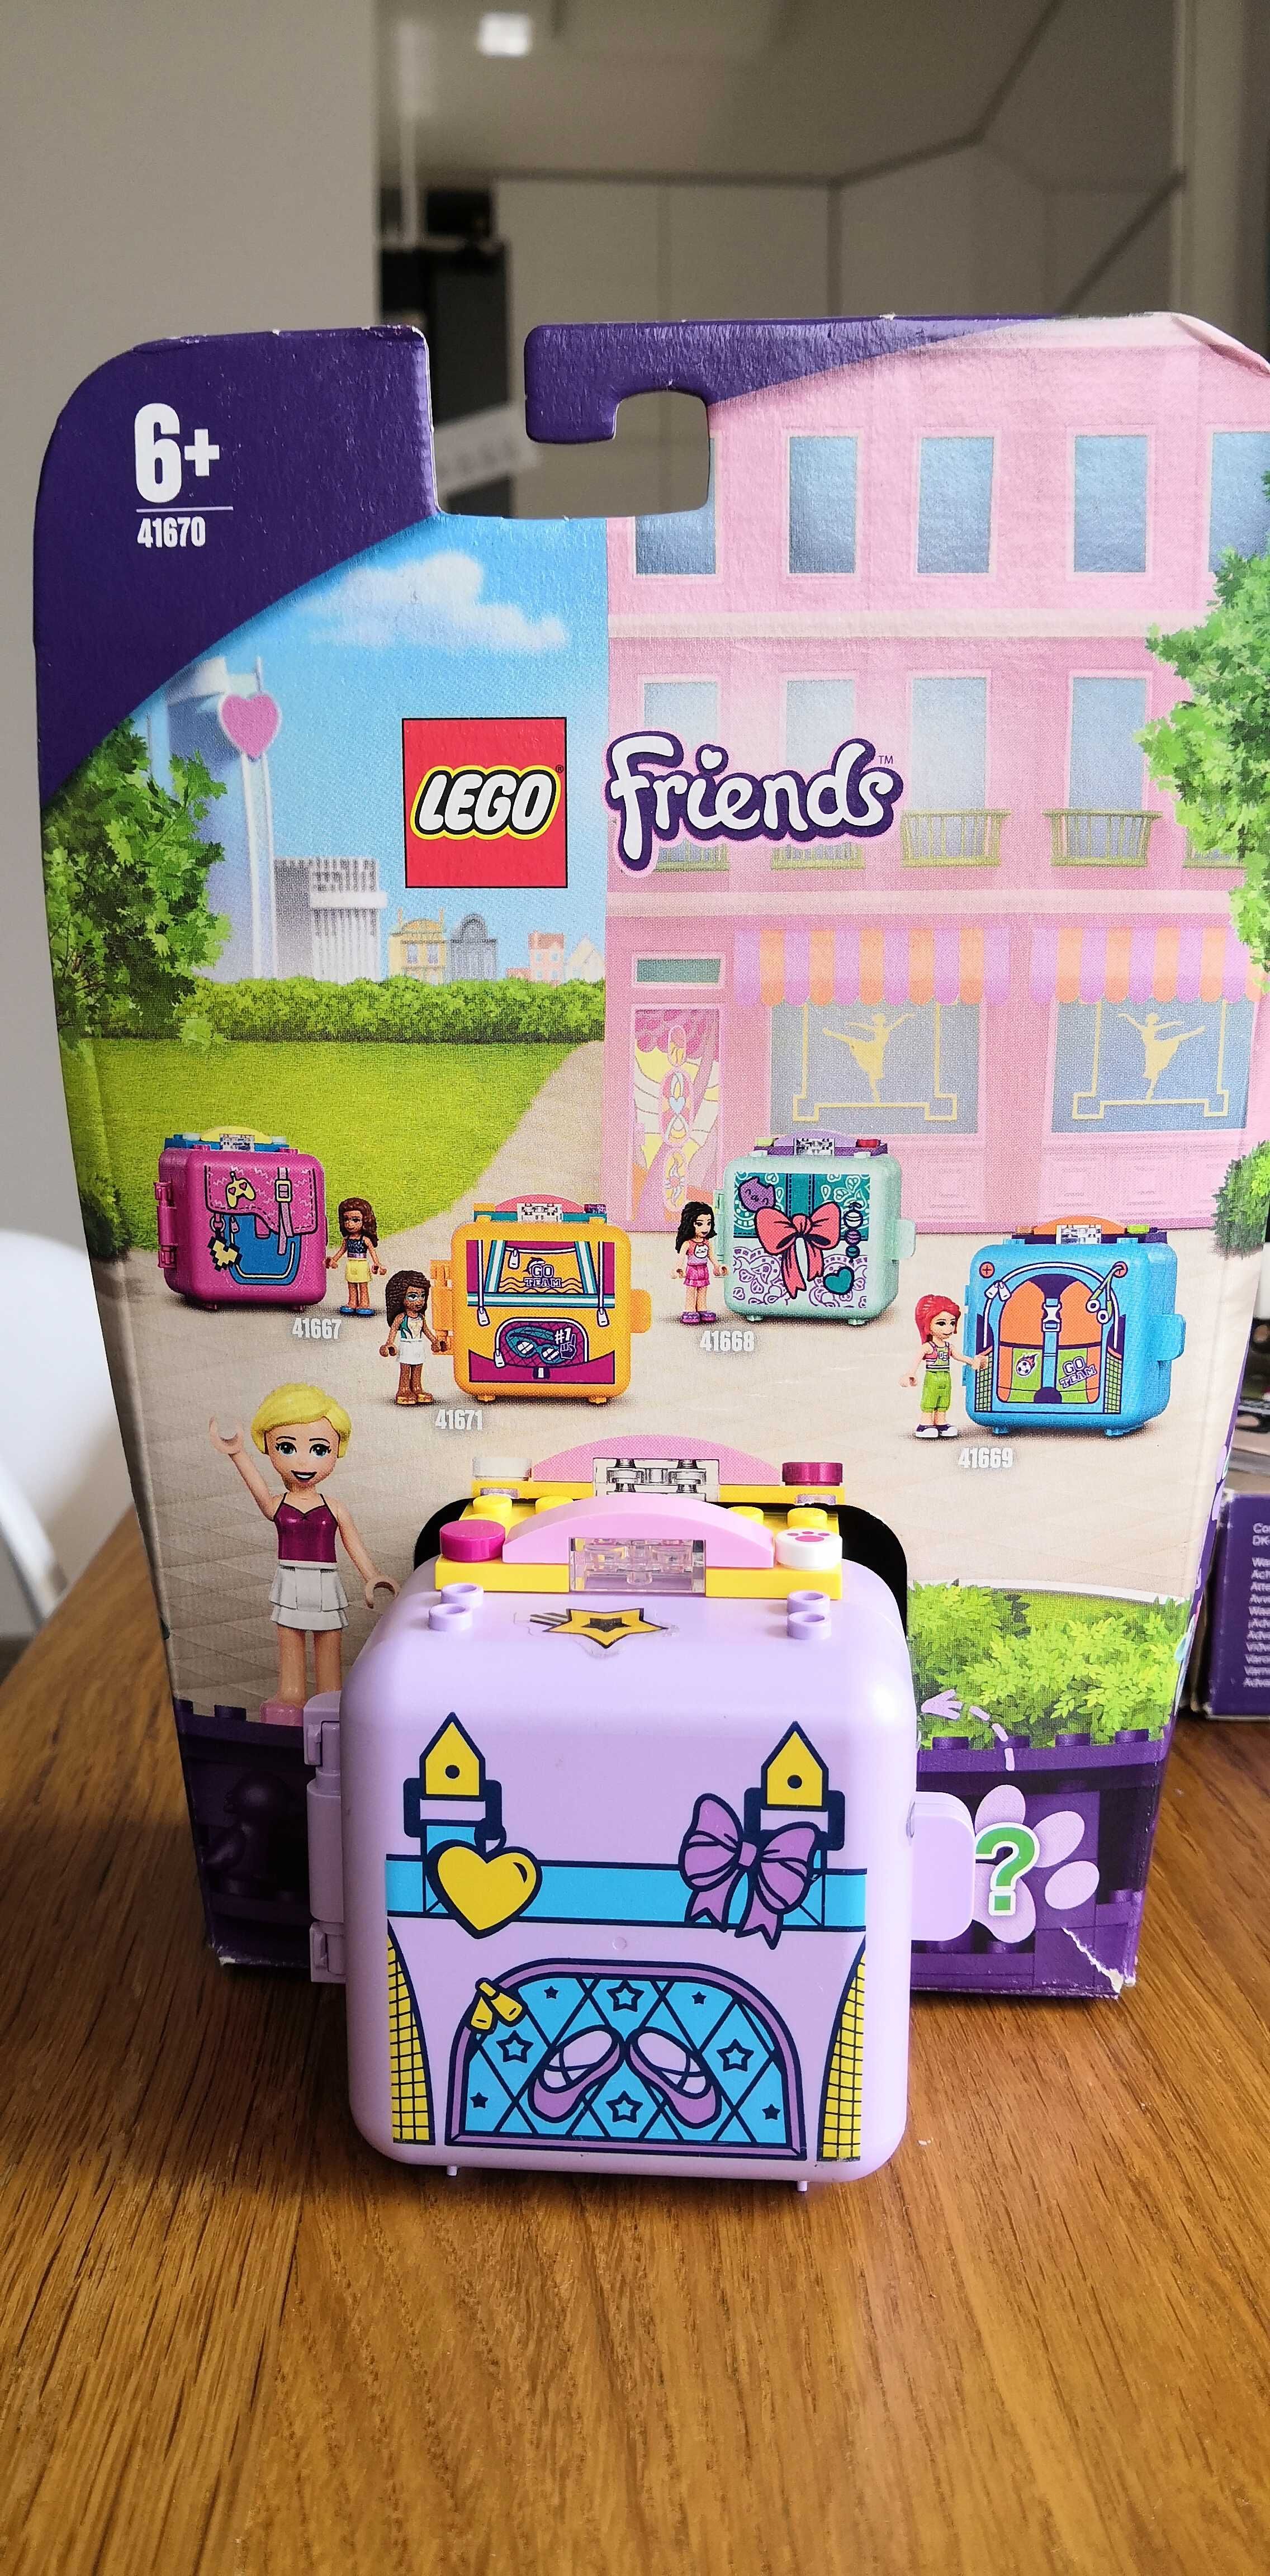 Kostka LEGO Friends 41670